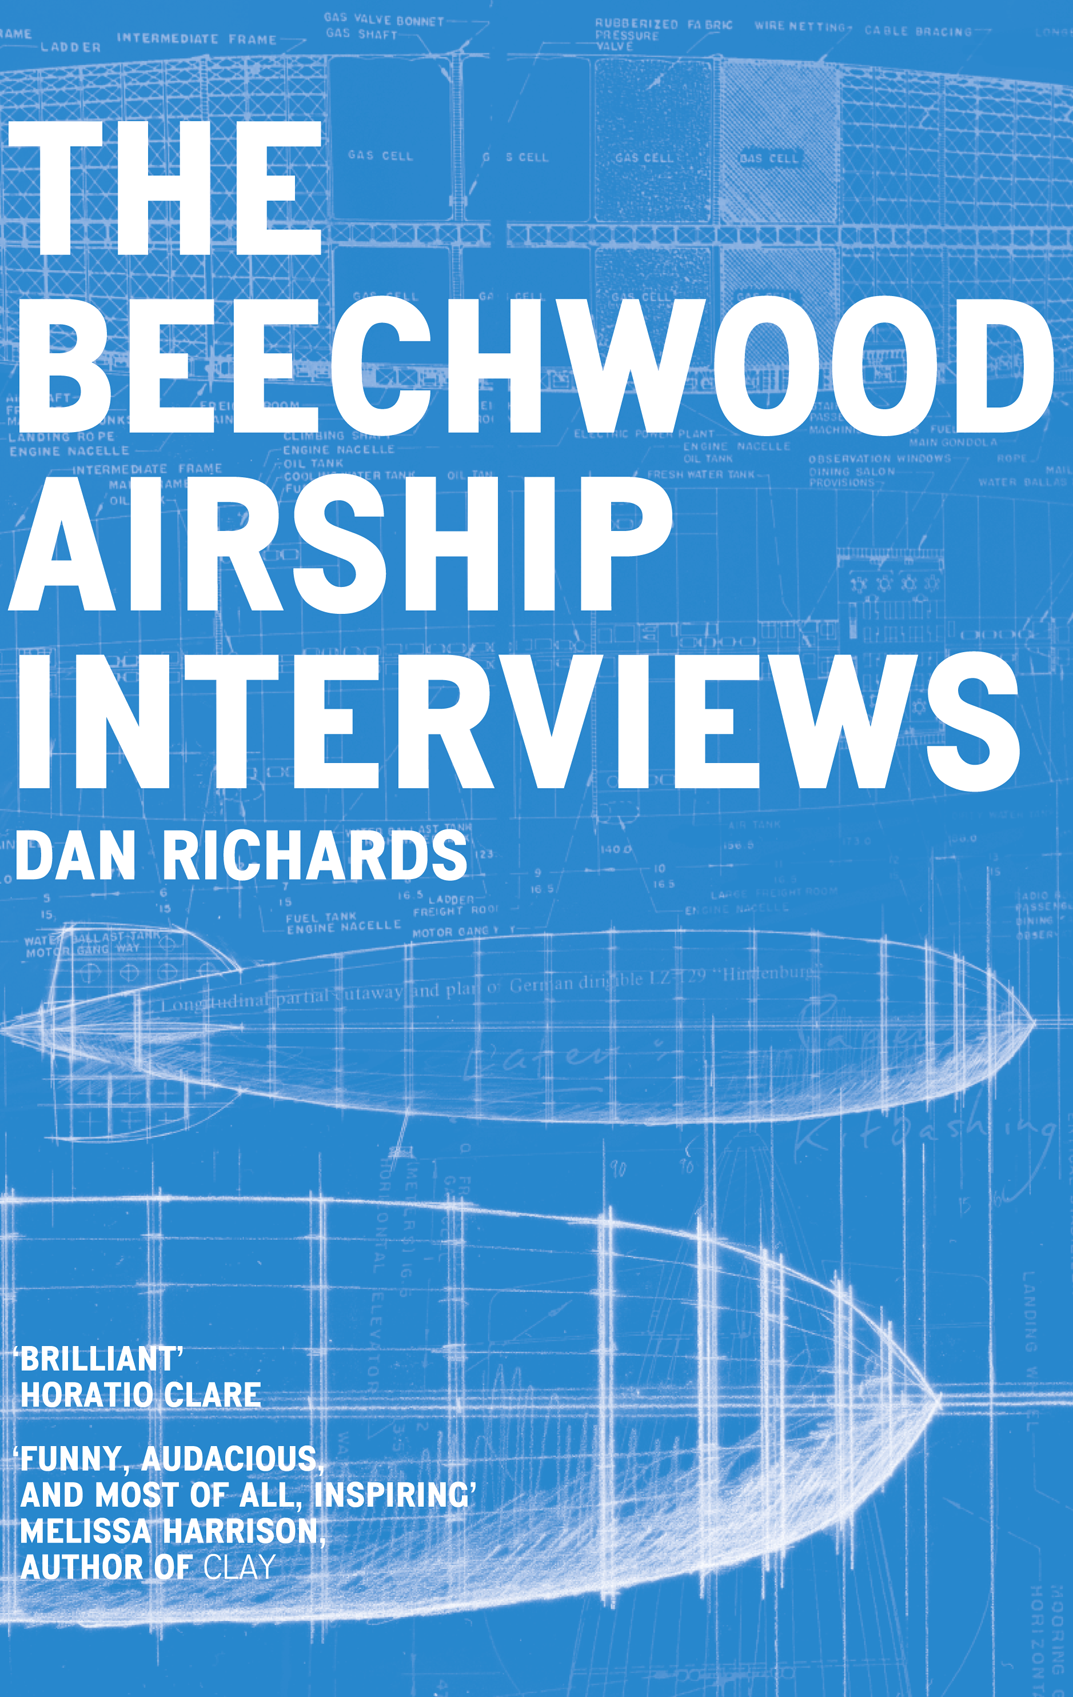 Книга The Beechwood Airship Interviews из серии , созданная Dan Richards, может относится к жанру Биографии и Мемуары. Стоимость электронной книги The Beechwood Airship Interviews с идентификатором 39813873 составляет 323.41 руб.